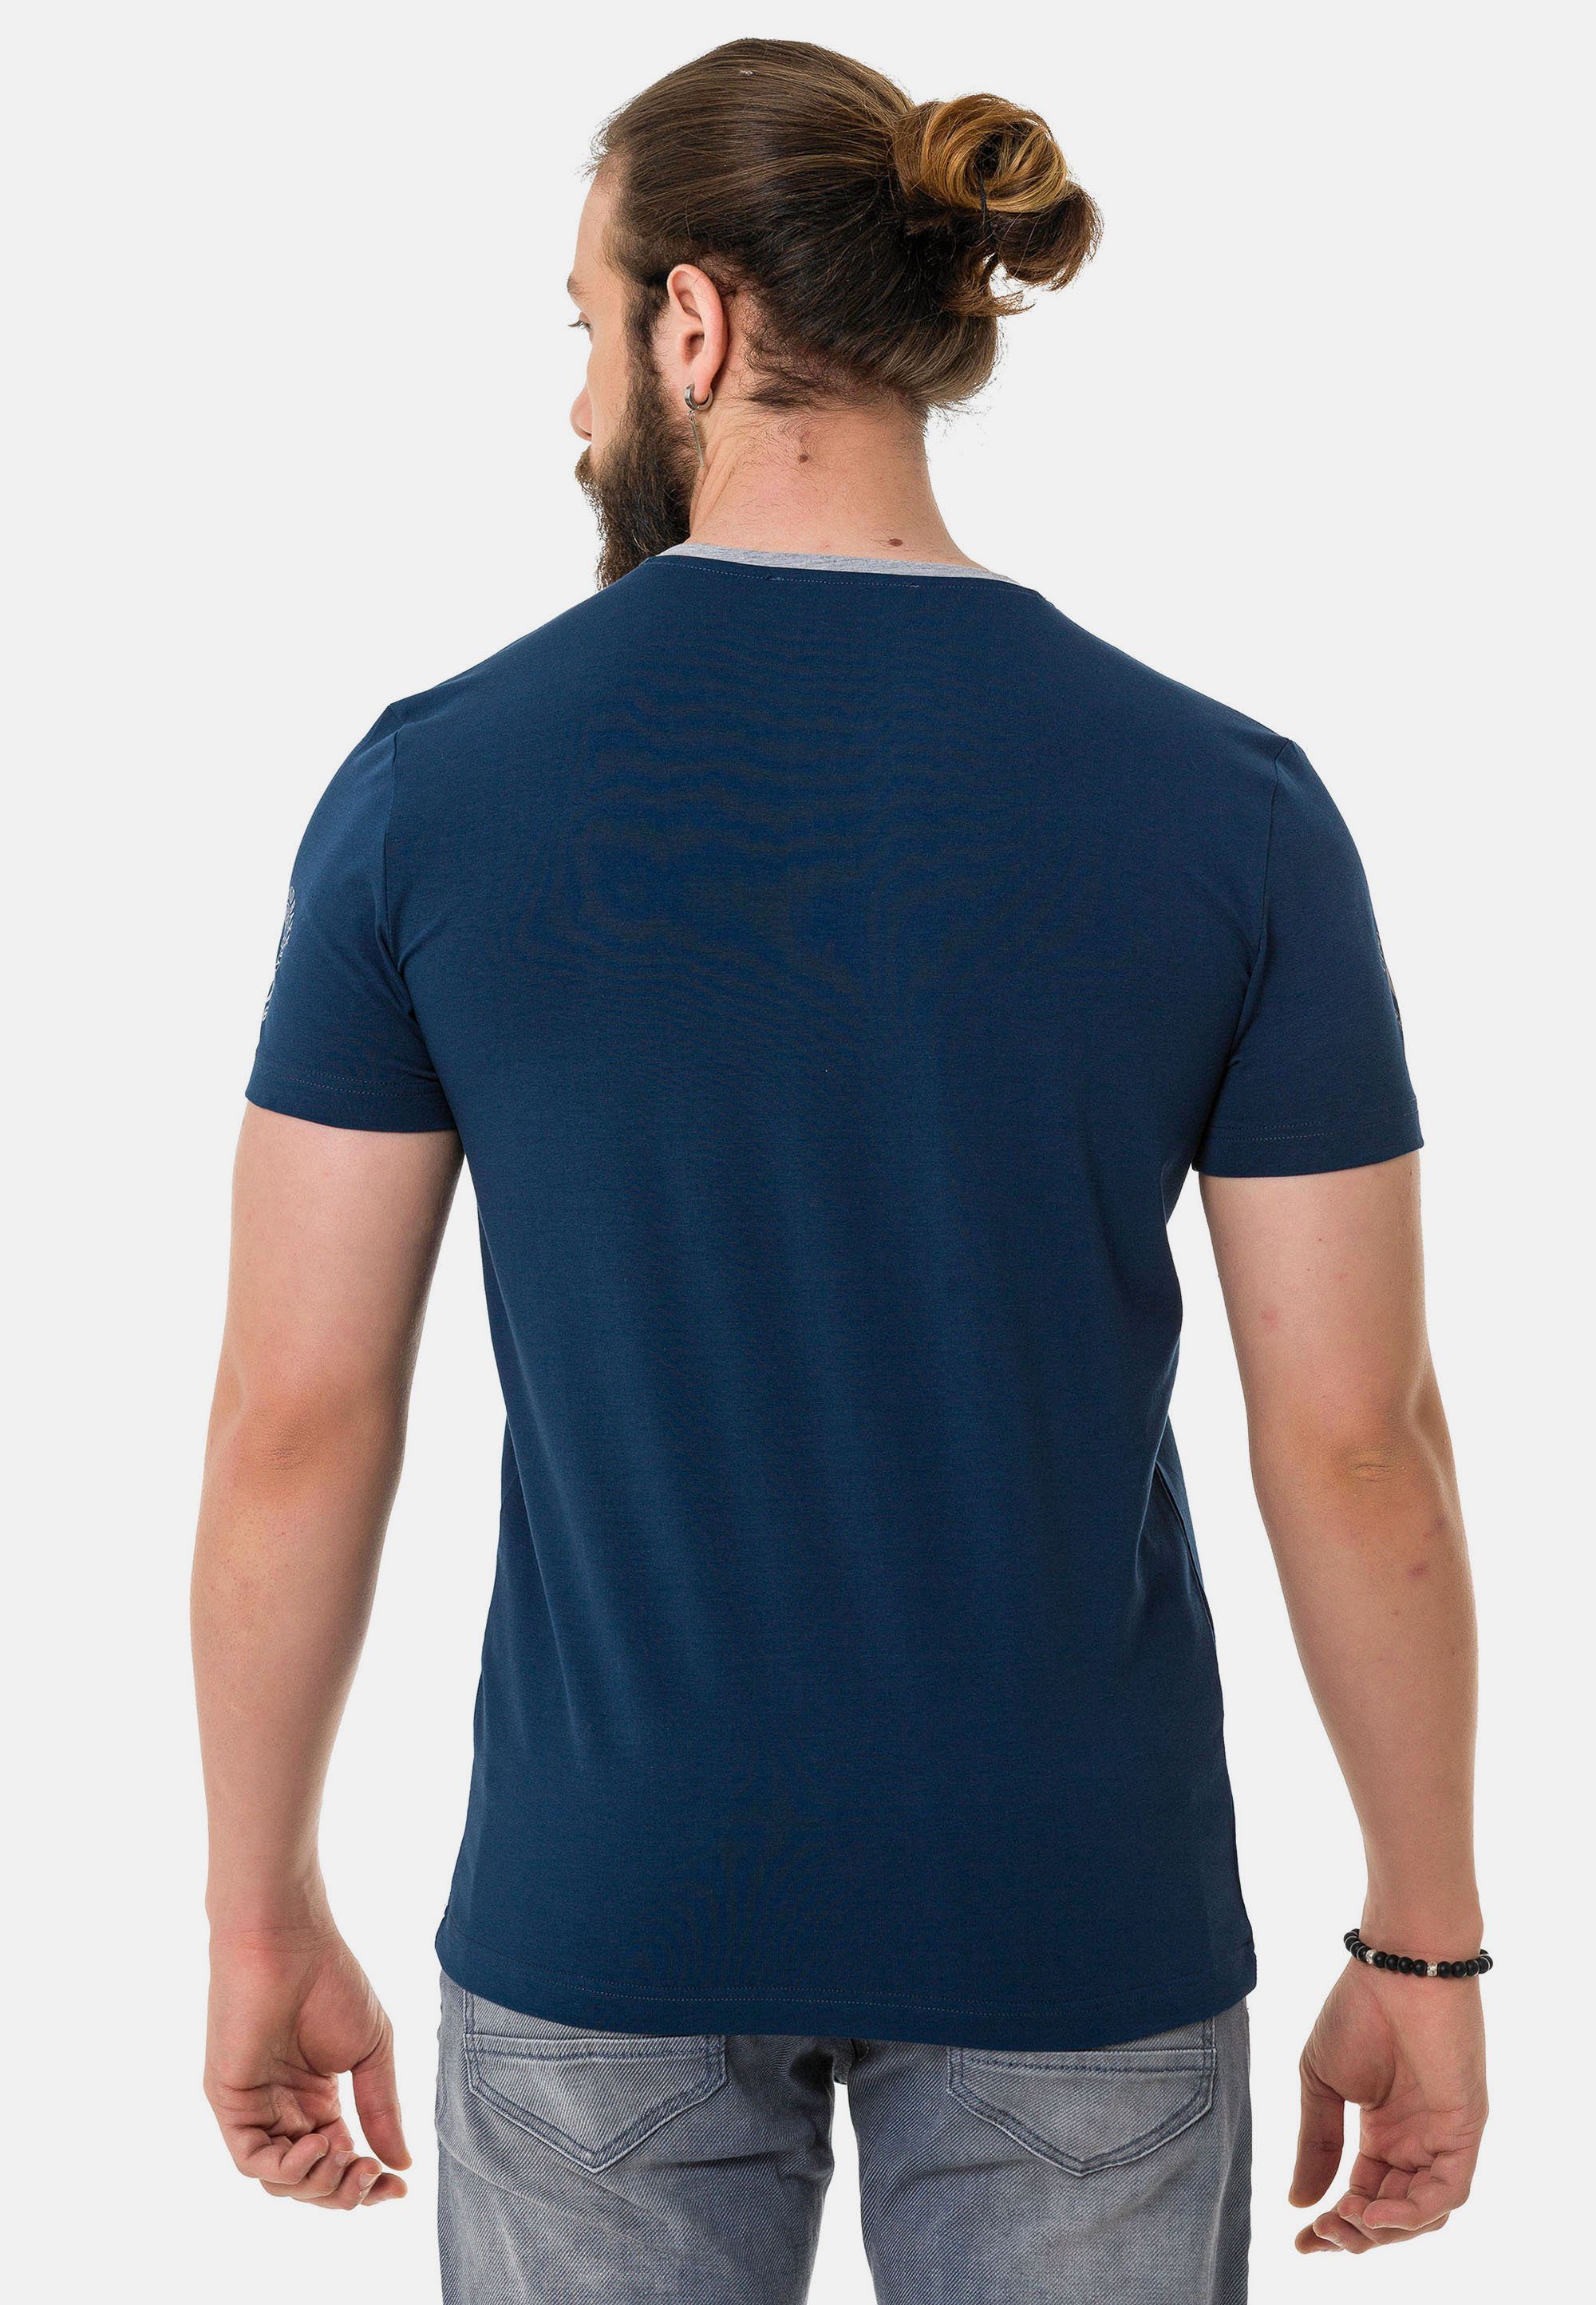 & Cipo dezenten blau mit Markenlogos T-Shirt Baxx